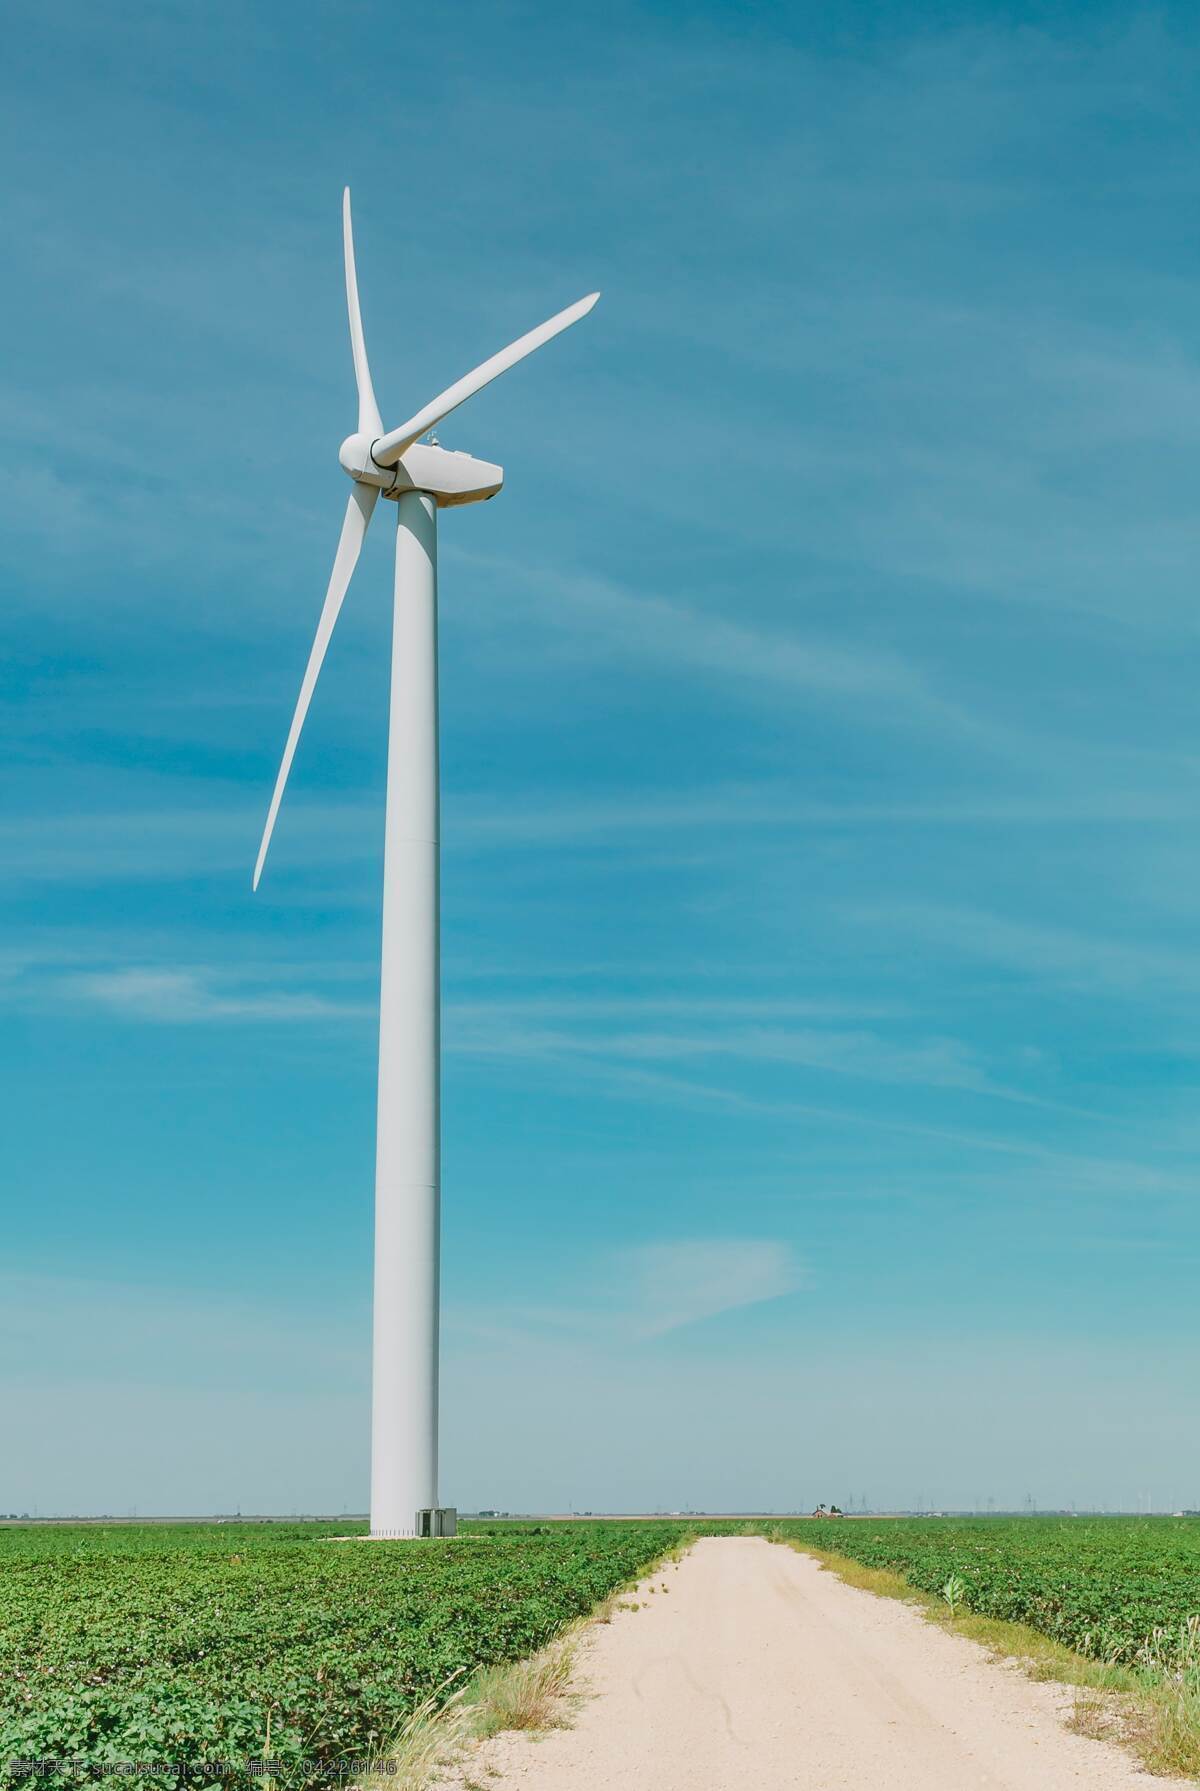 风力 风能发电 蓝天 白云 发电机 发电风车 设备 装置 科技 自然景观 山水风景